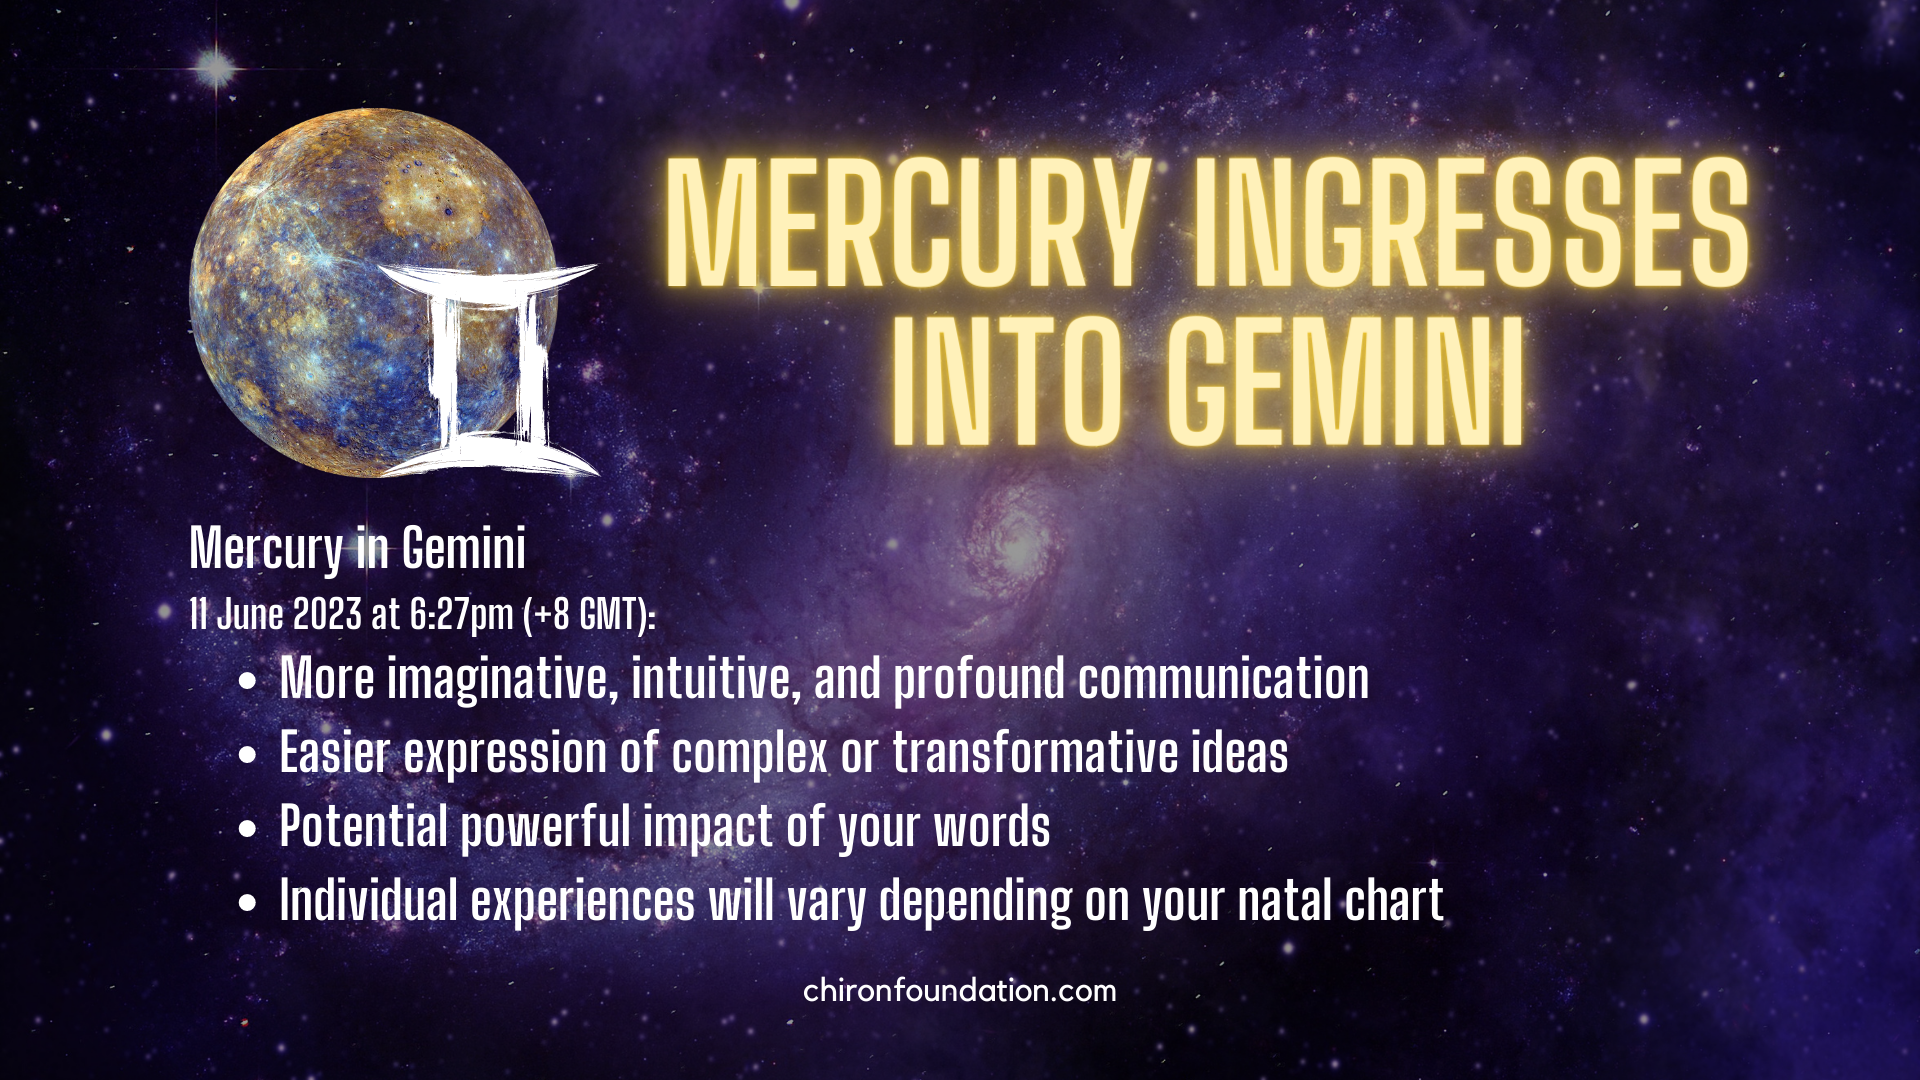 Mercury ingresses into Gemini